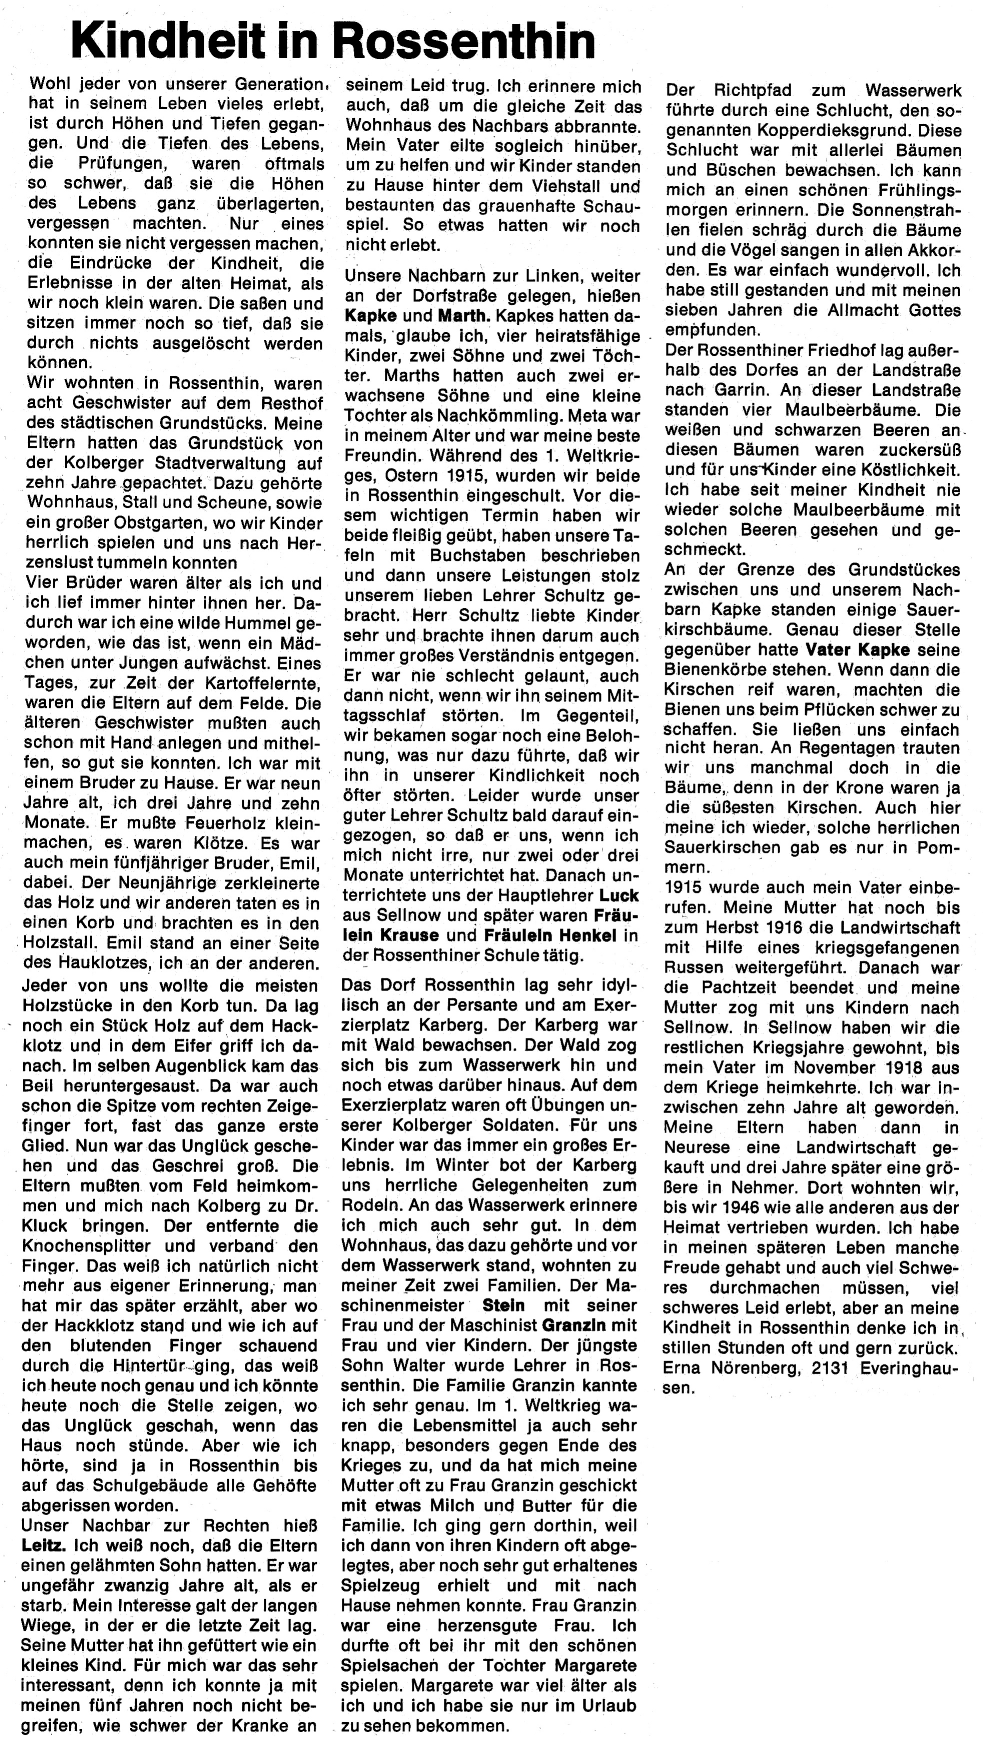 Quelle: Kolberger Zeitung, Ausgabe 7-8/1974